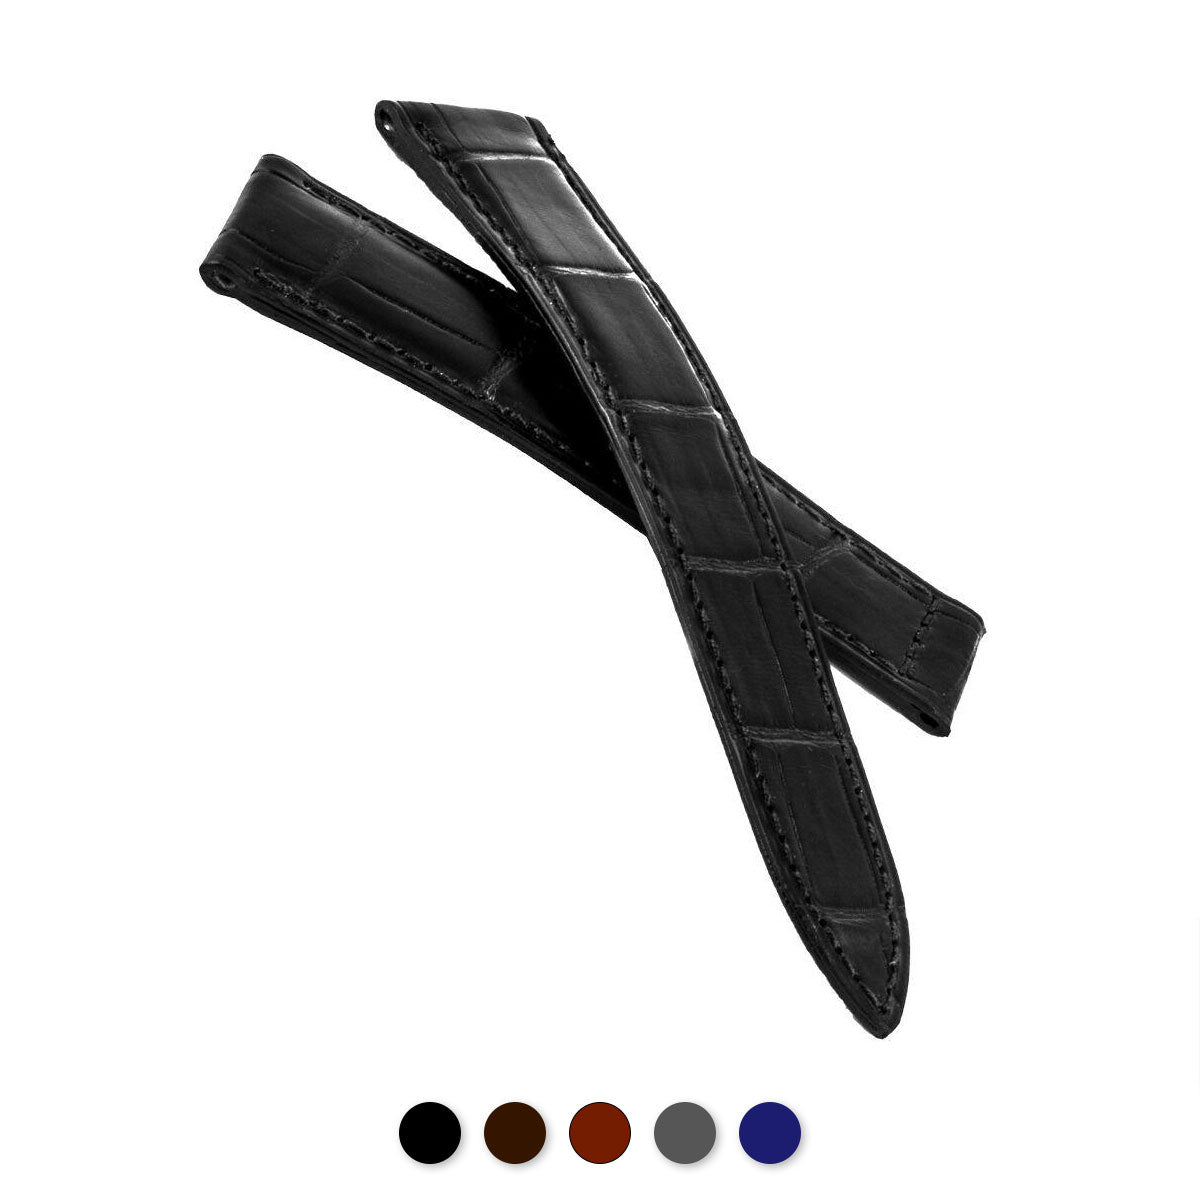 Cartier Tank - Bracelet de montre cuir - Alligator (noir, marron, gris, bleu) - watch band leather strap - ABP Concept -